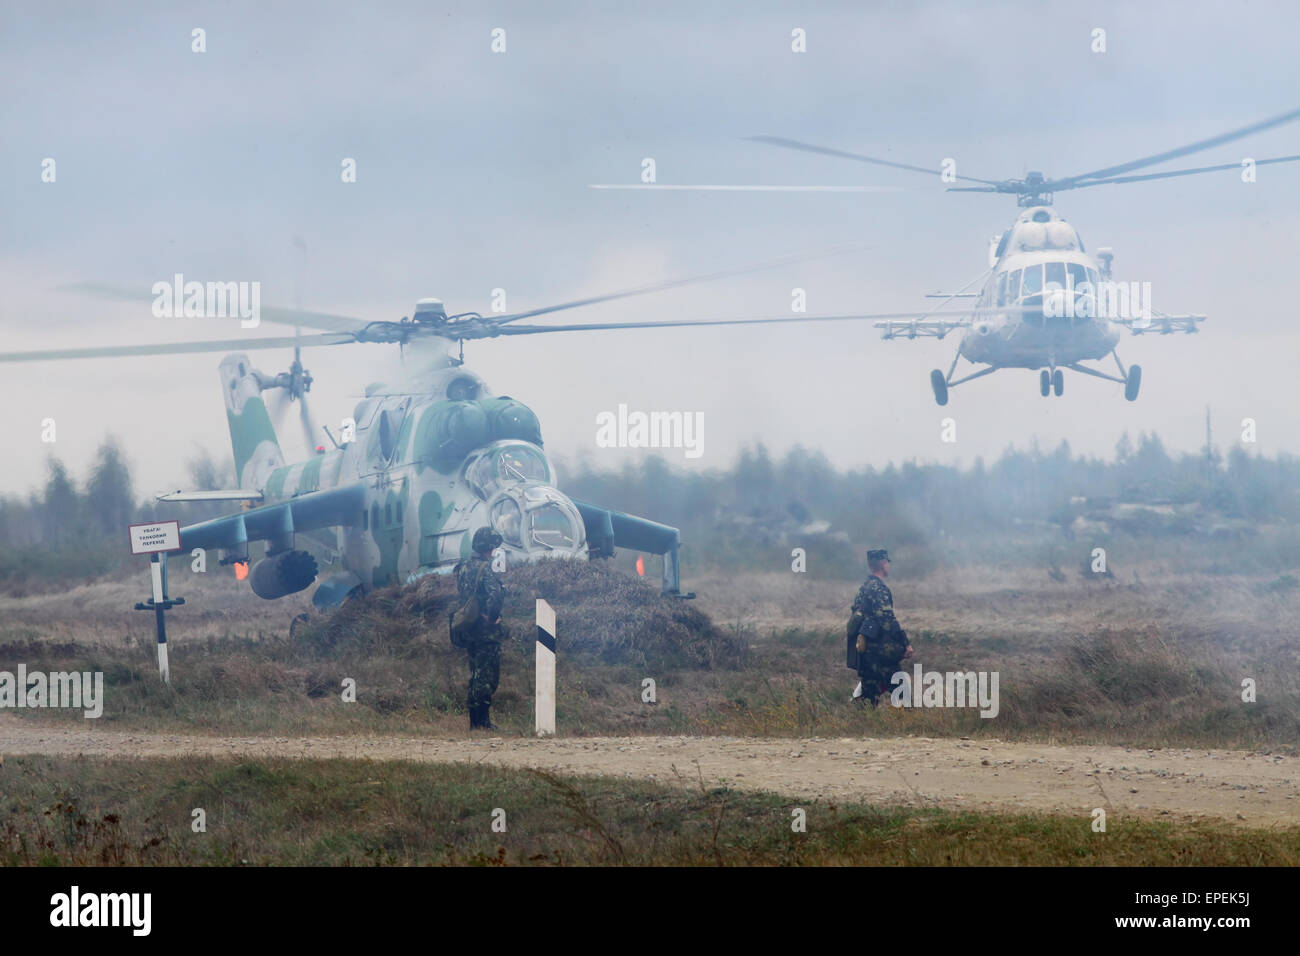 Shitomir, Ukraine - 29. September 2010: Ukrainische Armee Mi-24 Kampfhubschrauber während der militärischen Ausbildung Stockfoto